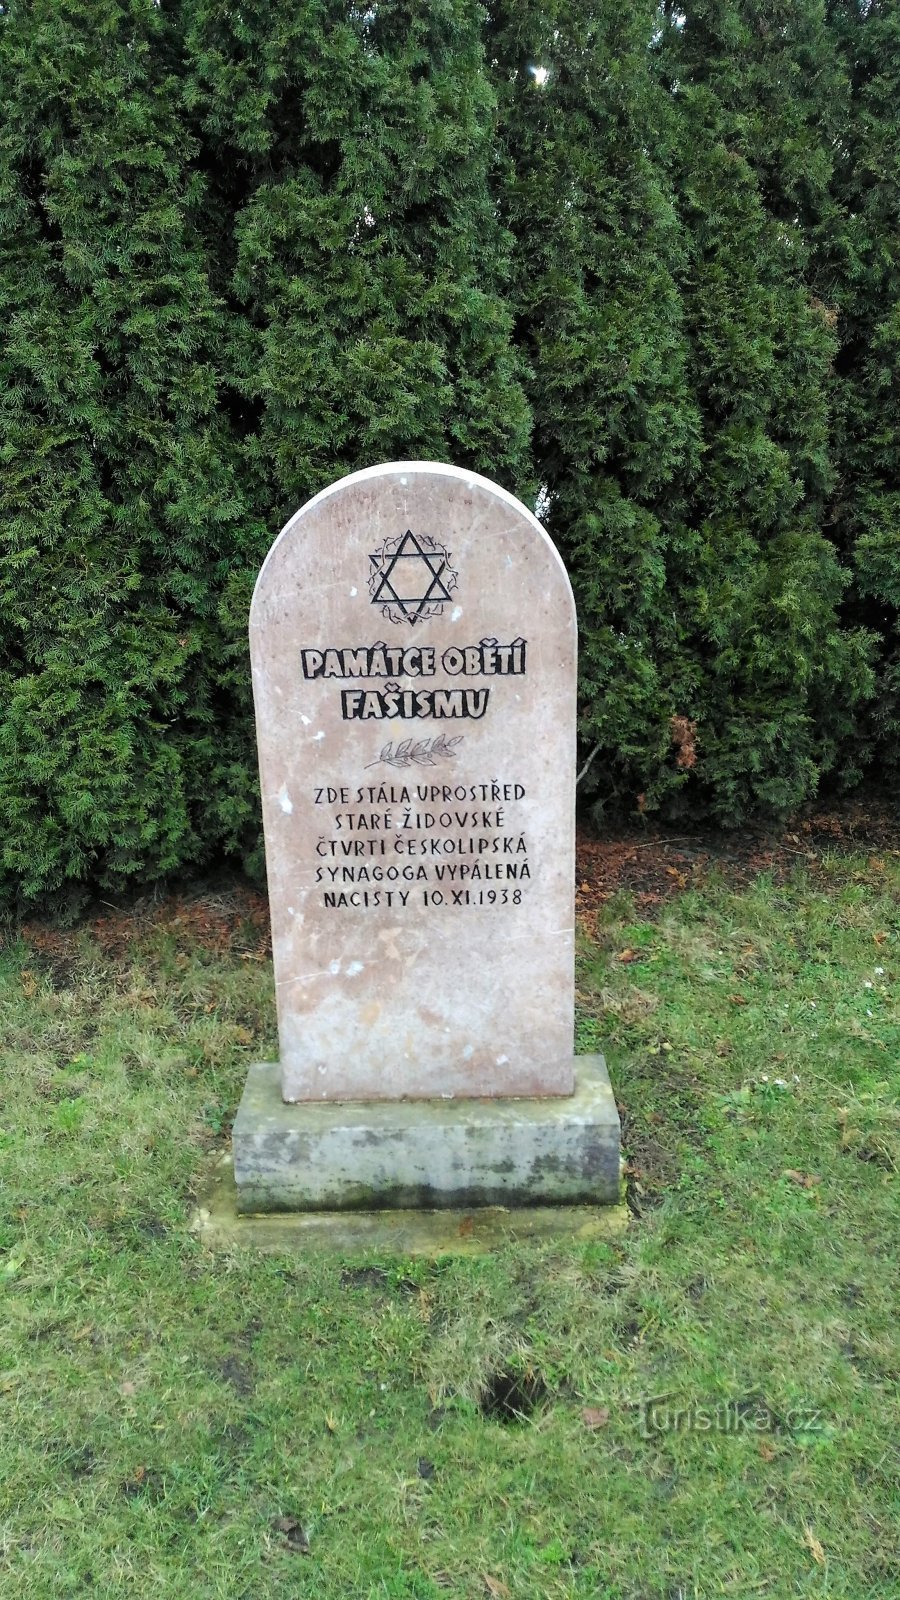 Monumento às vítimas do fascismo em Česká Lípa.